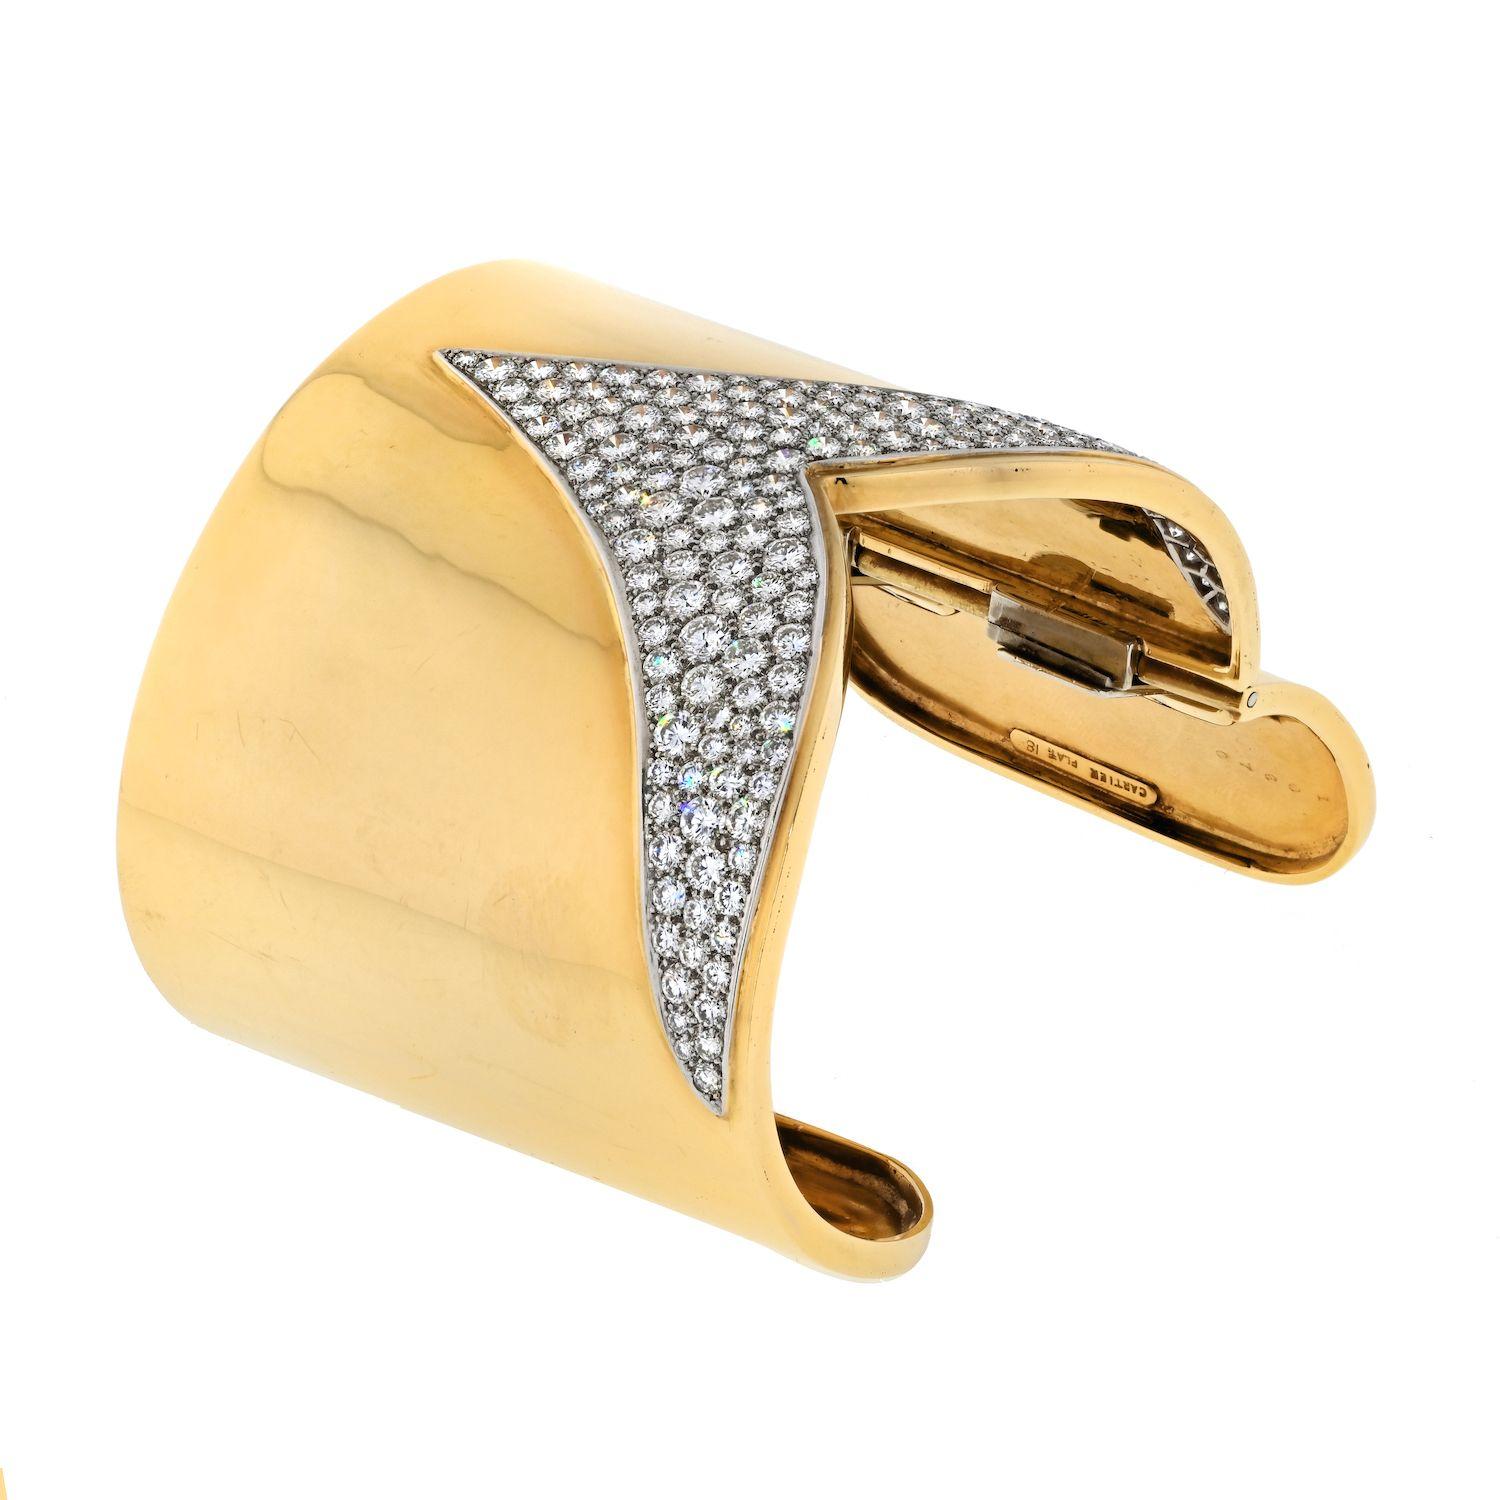 Découvrez l'incarnation du raffinement et du luxe avec le bracelet manchette Estate Cartier en or jaune 18 carats et diamants, un chef-d'œuvre qui marie harmonieusement l'élégance intemporelle à un savoir-faire artisanal inégalé. Fabriqué avec une